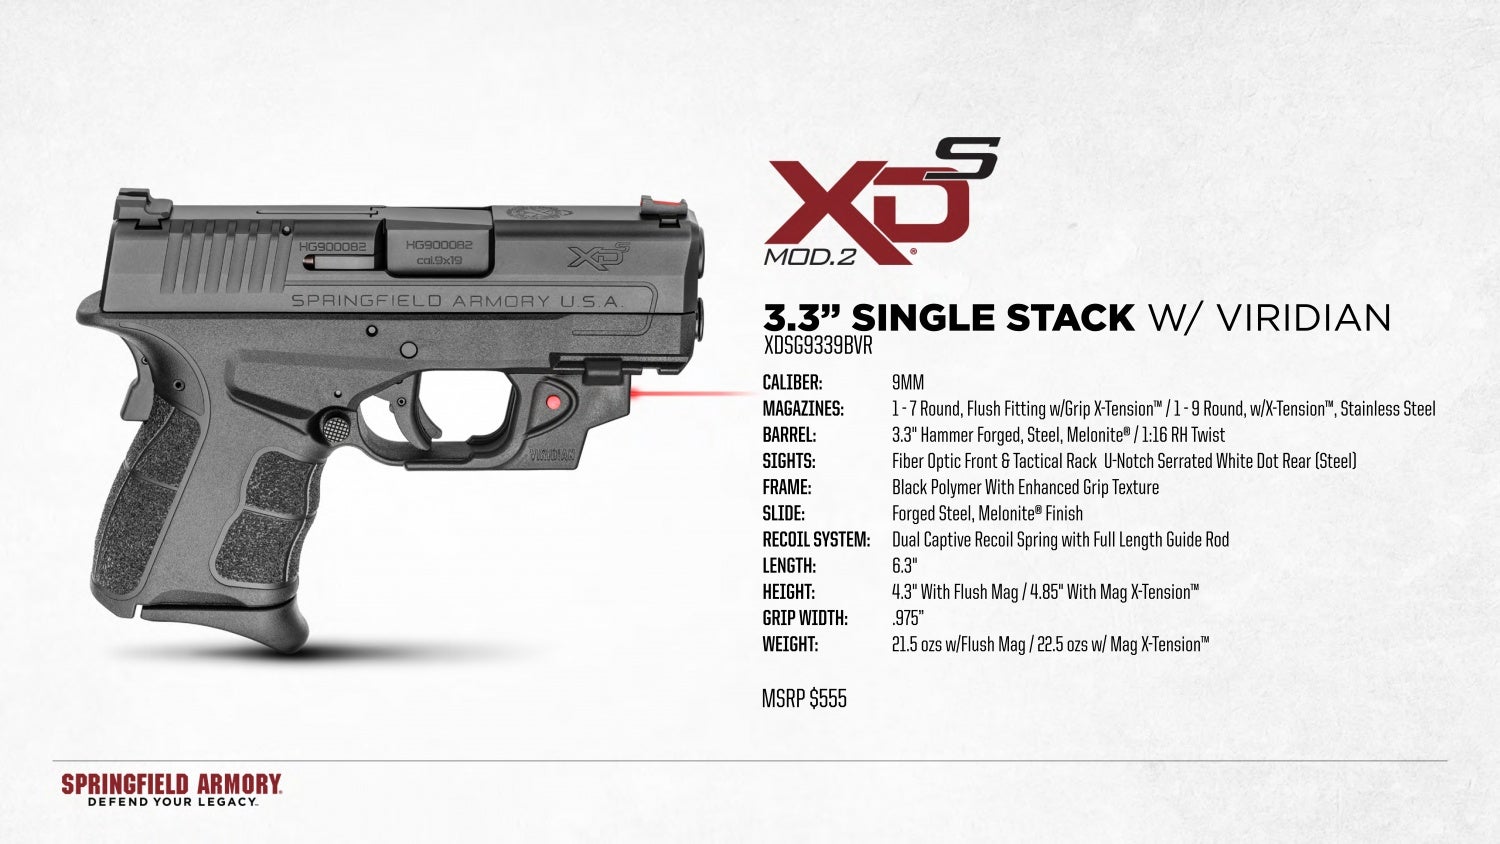 XDS Mod.2 9mm